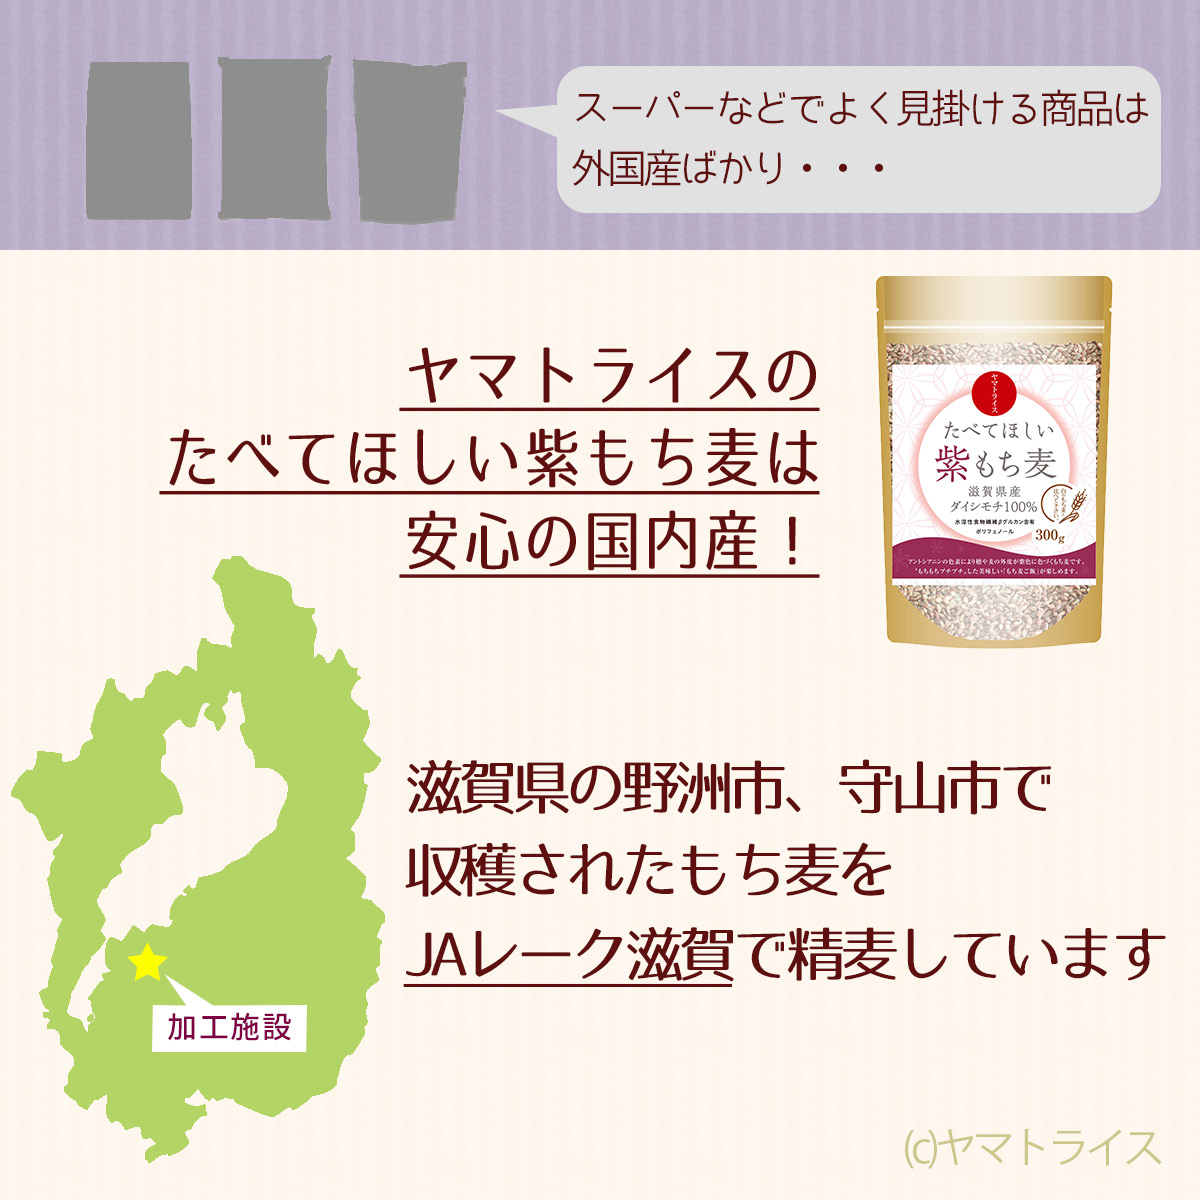 もち麦】たべてほしい紫もち麦 300g×4袋 滋賀県産 ダイシモチ